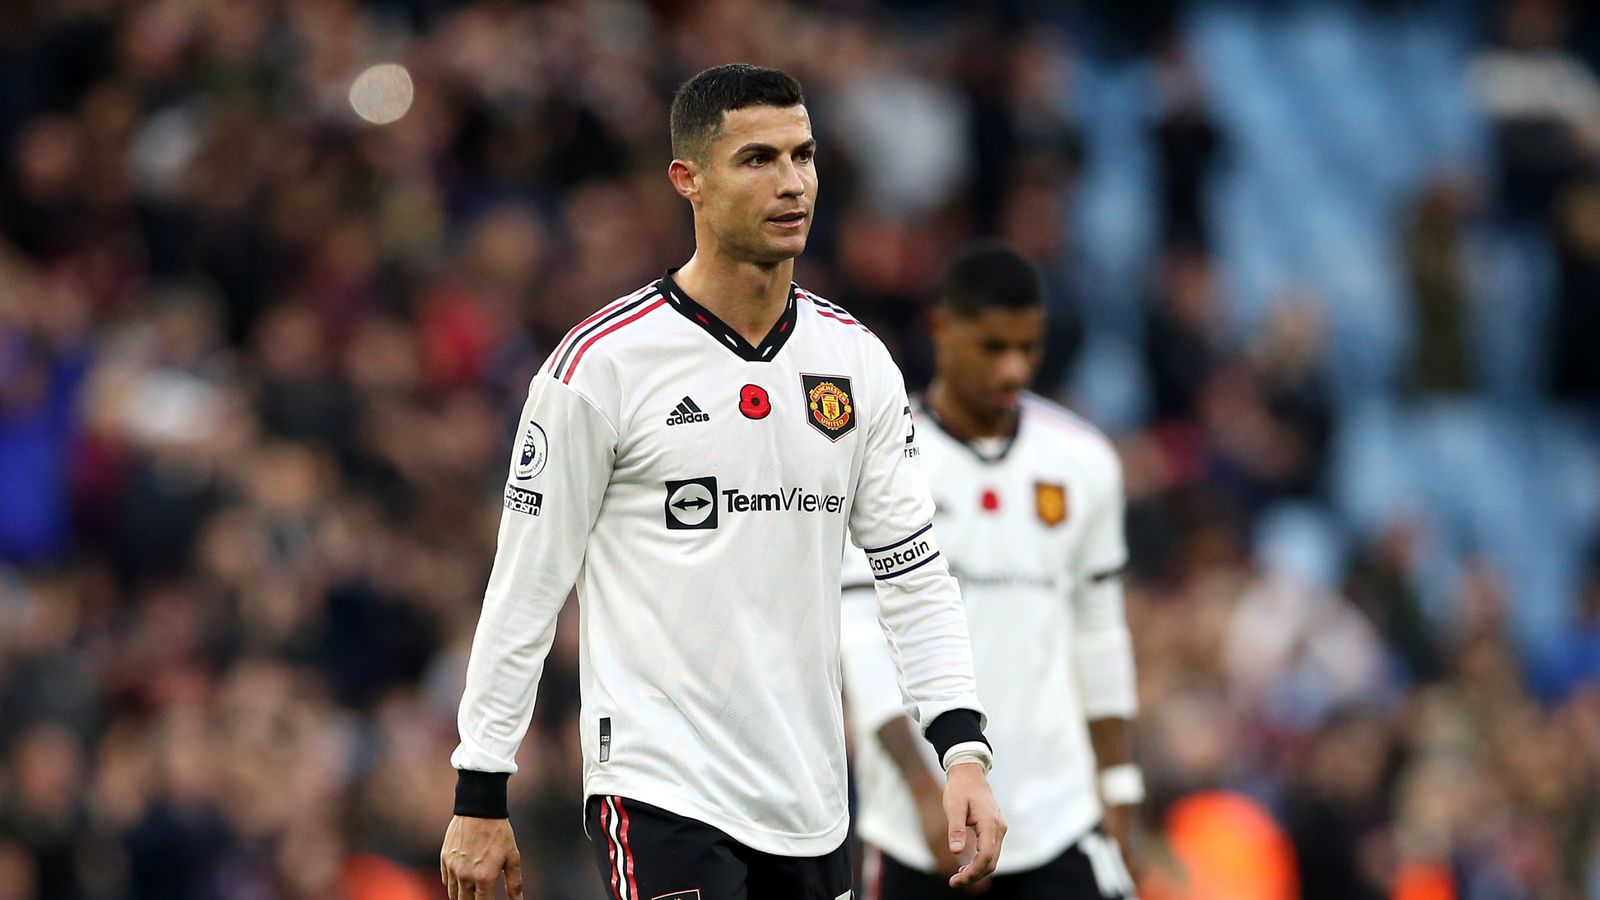 Erik ten Hag frustrasi dengan umpan ‘bodoh’ Man Utd kepada Cristiano Ronaldo saat Aston Villa mengalahkan mereka 3-1 di Villa Park |  berita sepak bola